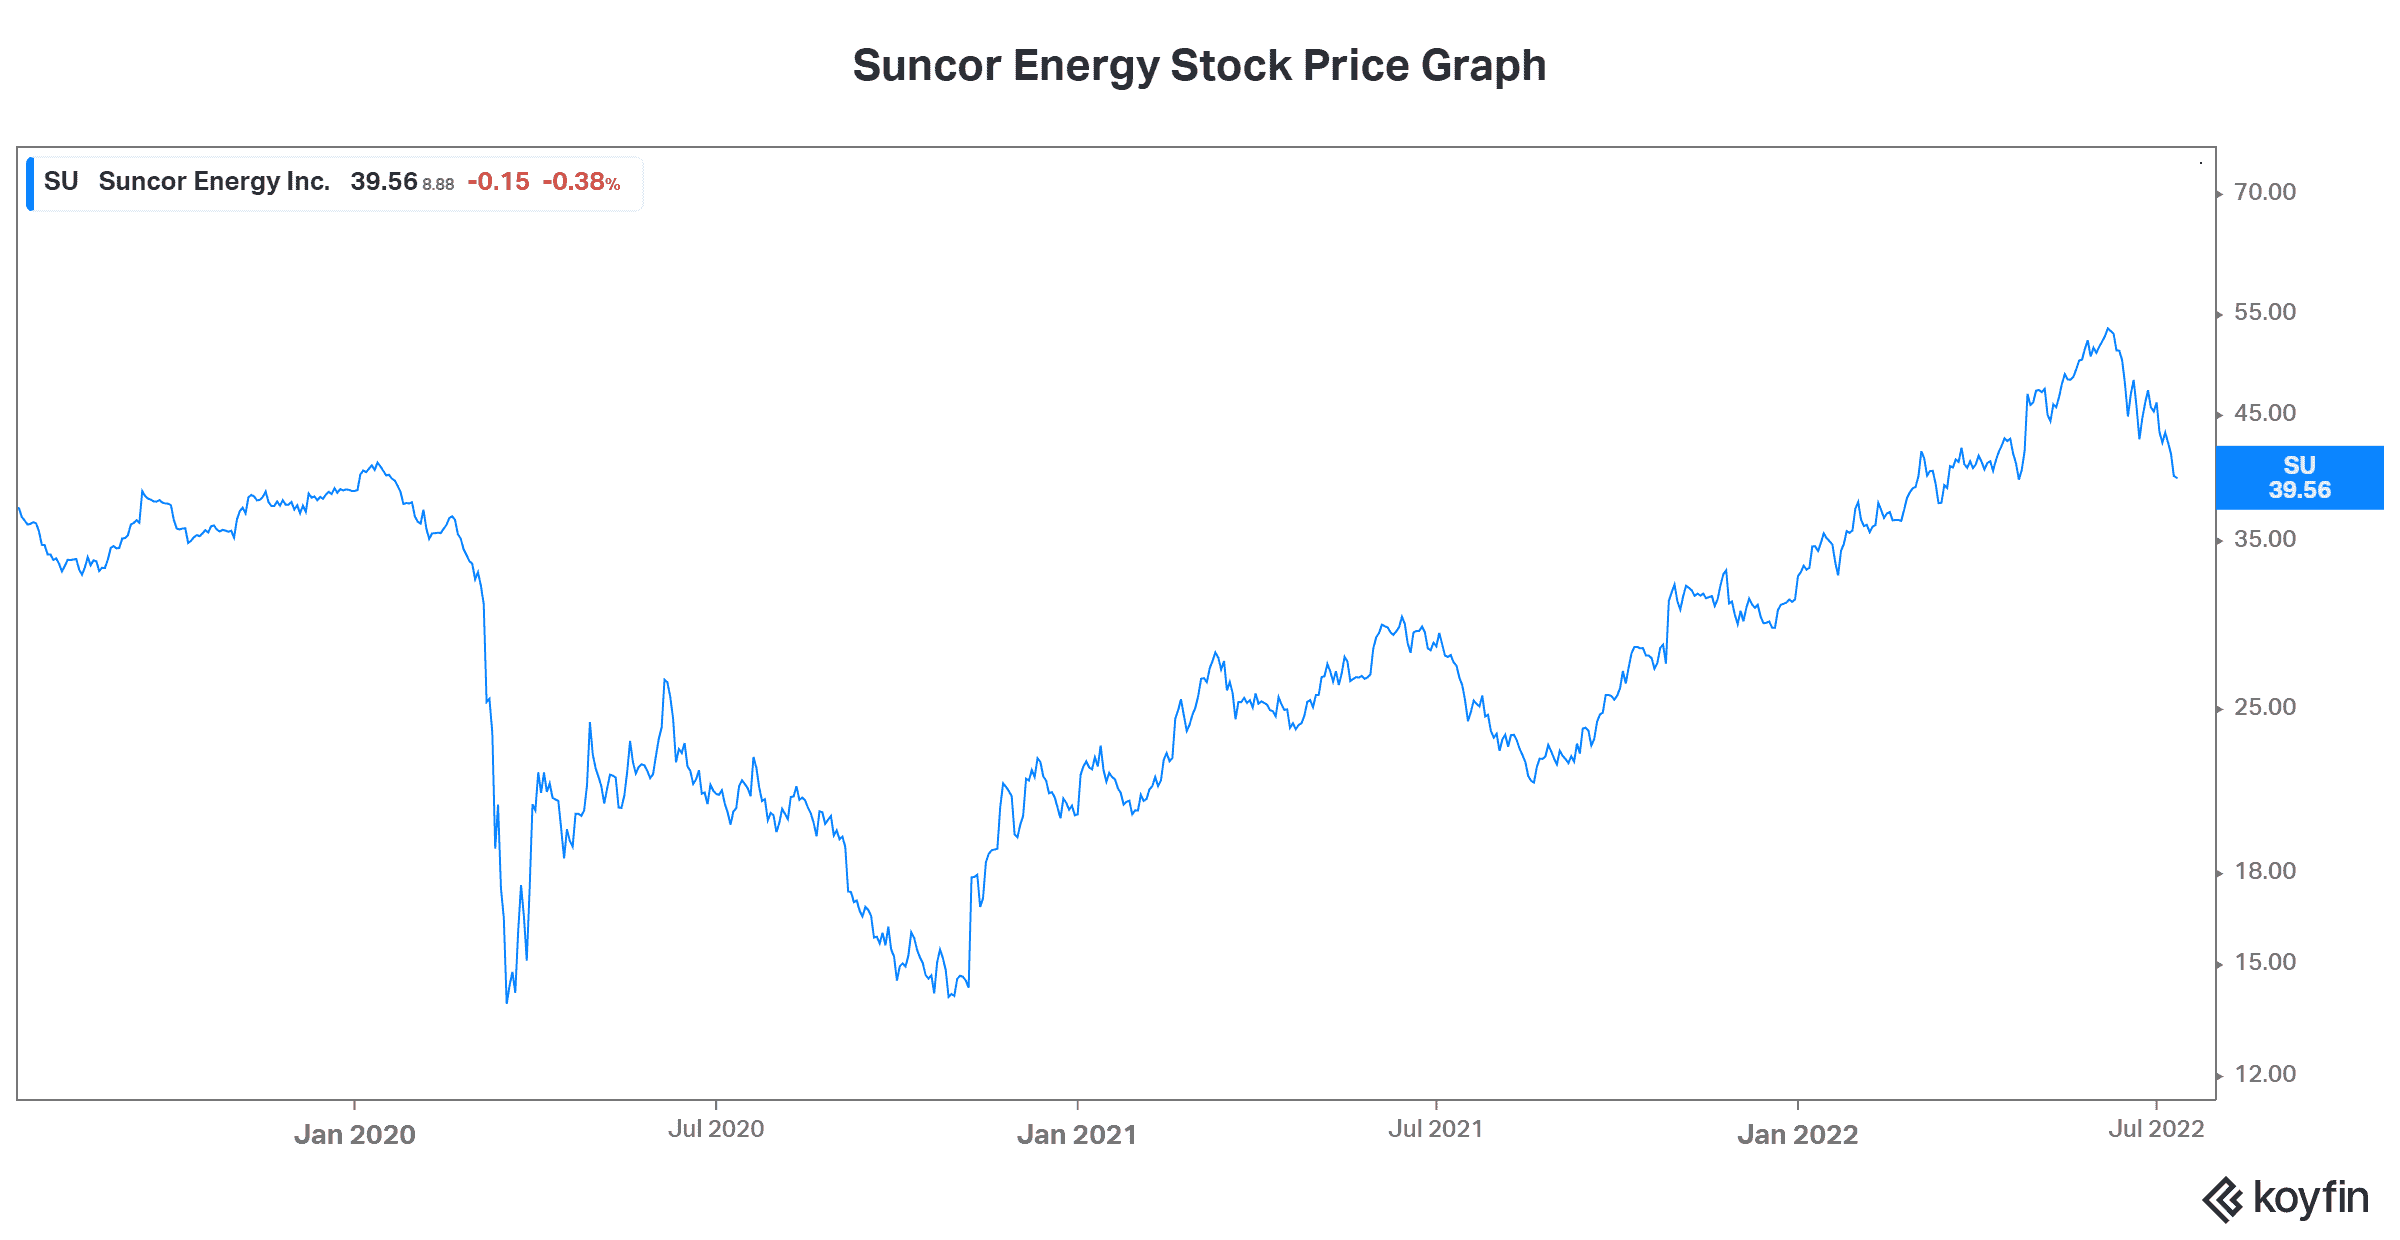 Suncor Energy stock price